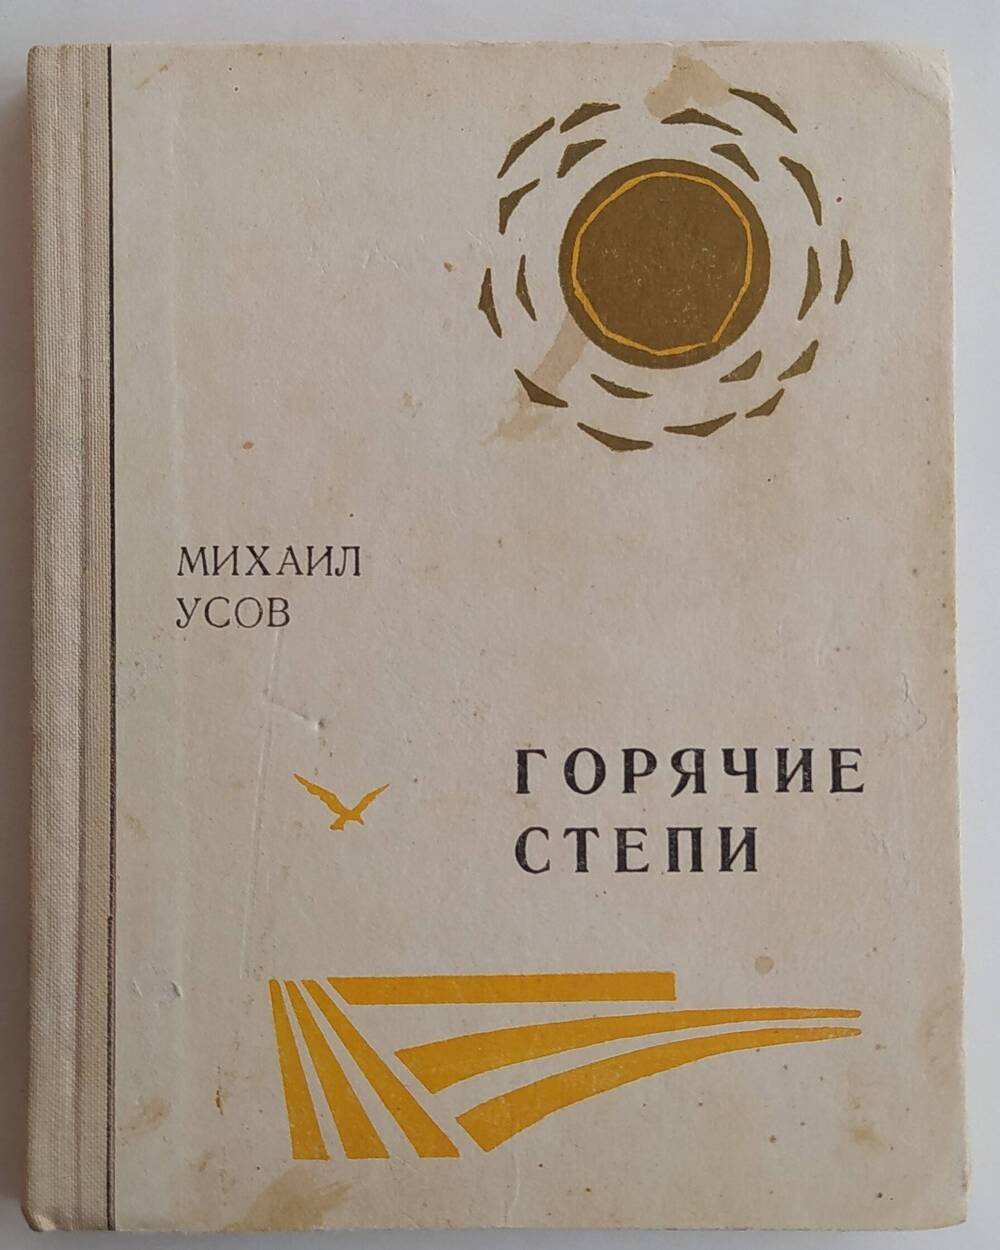 Книга М. Усова «Горячие степи», выпущенная Ставропольским книжным издательством г. Ставрополь 1976 г., тиражом 10000 экземпляров.